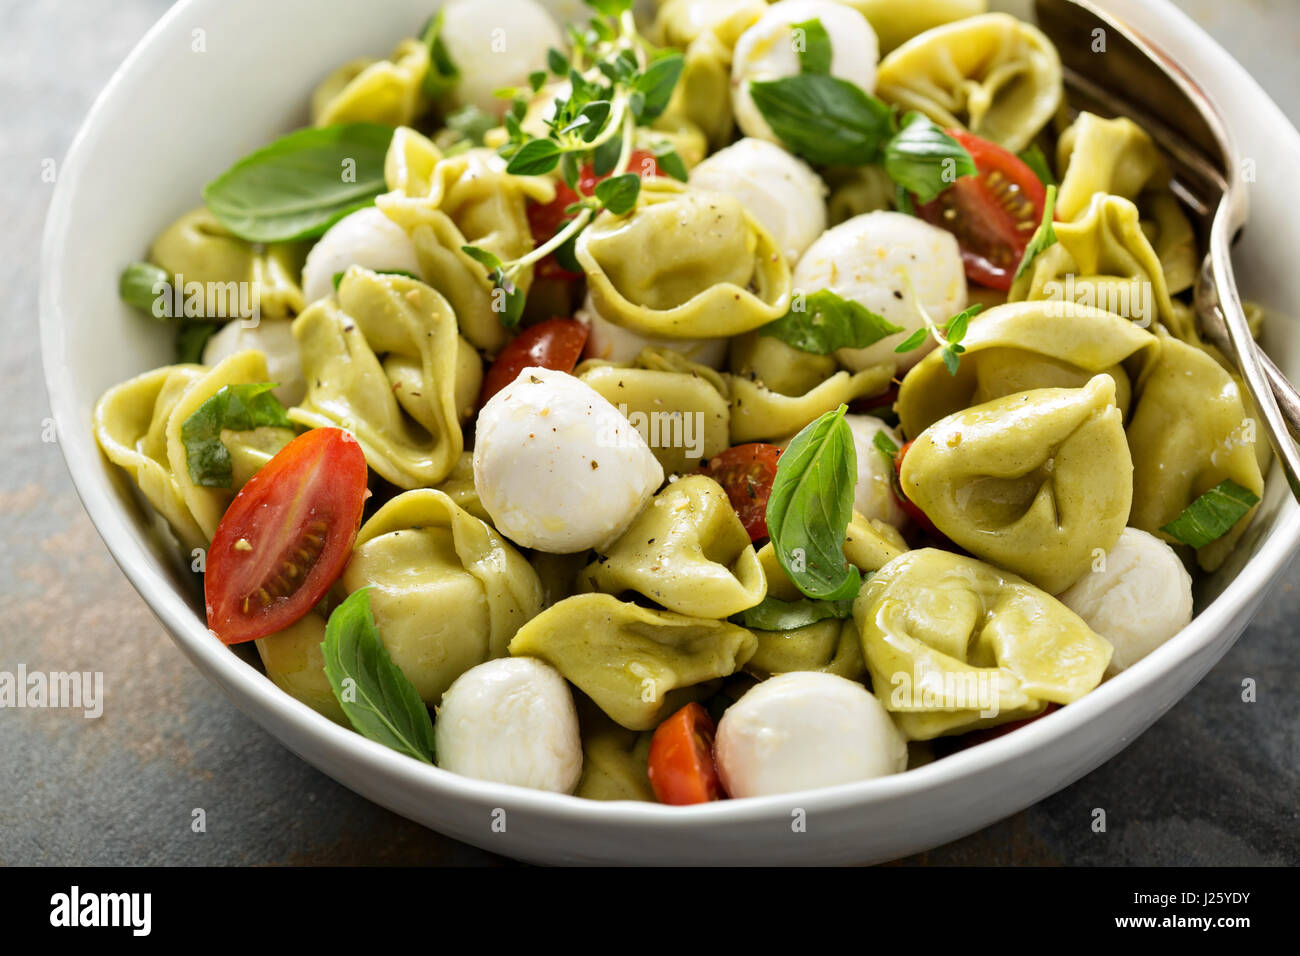 Italienische Pasta-Salat mit Spinat-Ricotta-Tortellini, Mozzarella, Tomaten  und Basilikum Stockfotografie - Alamy